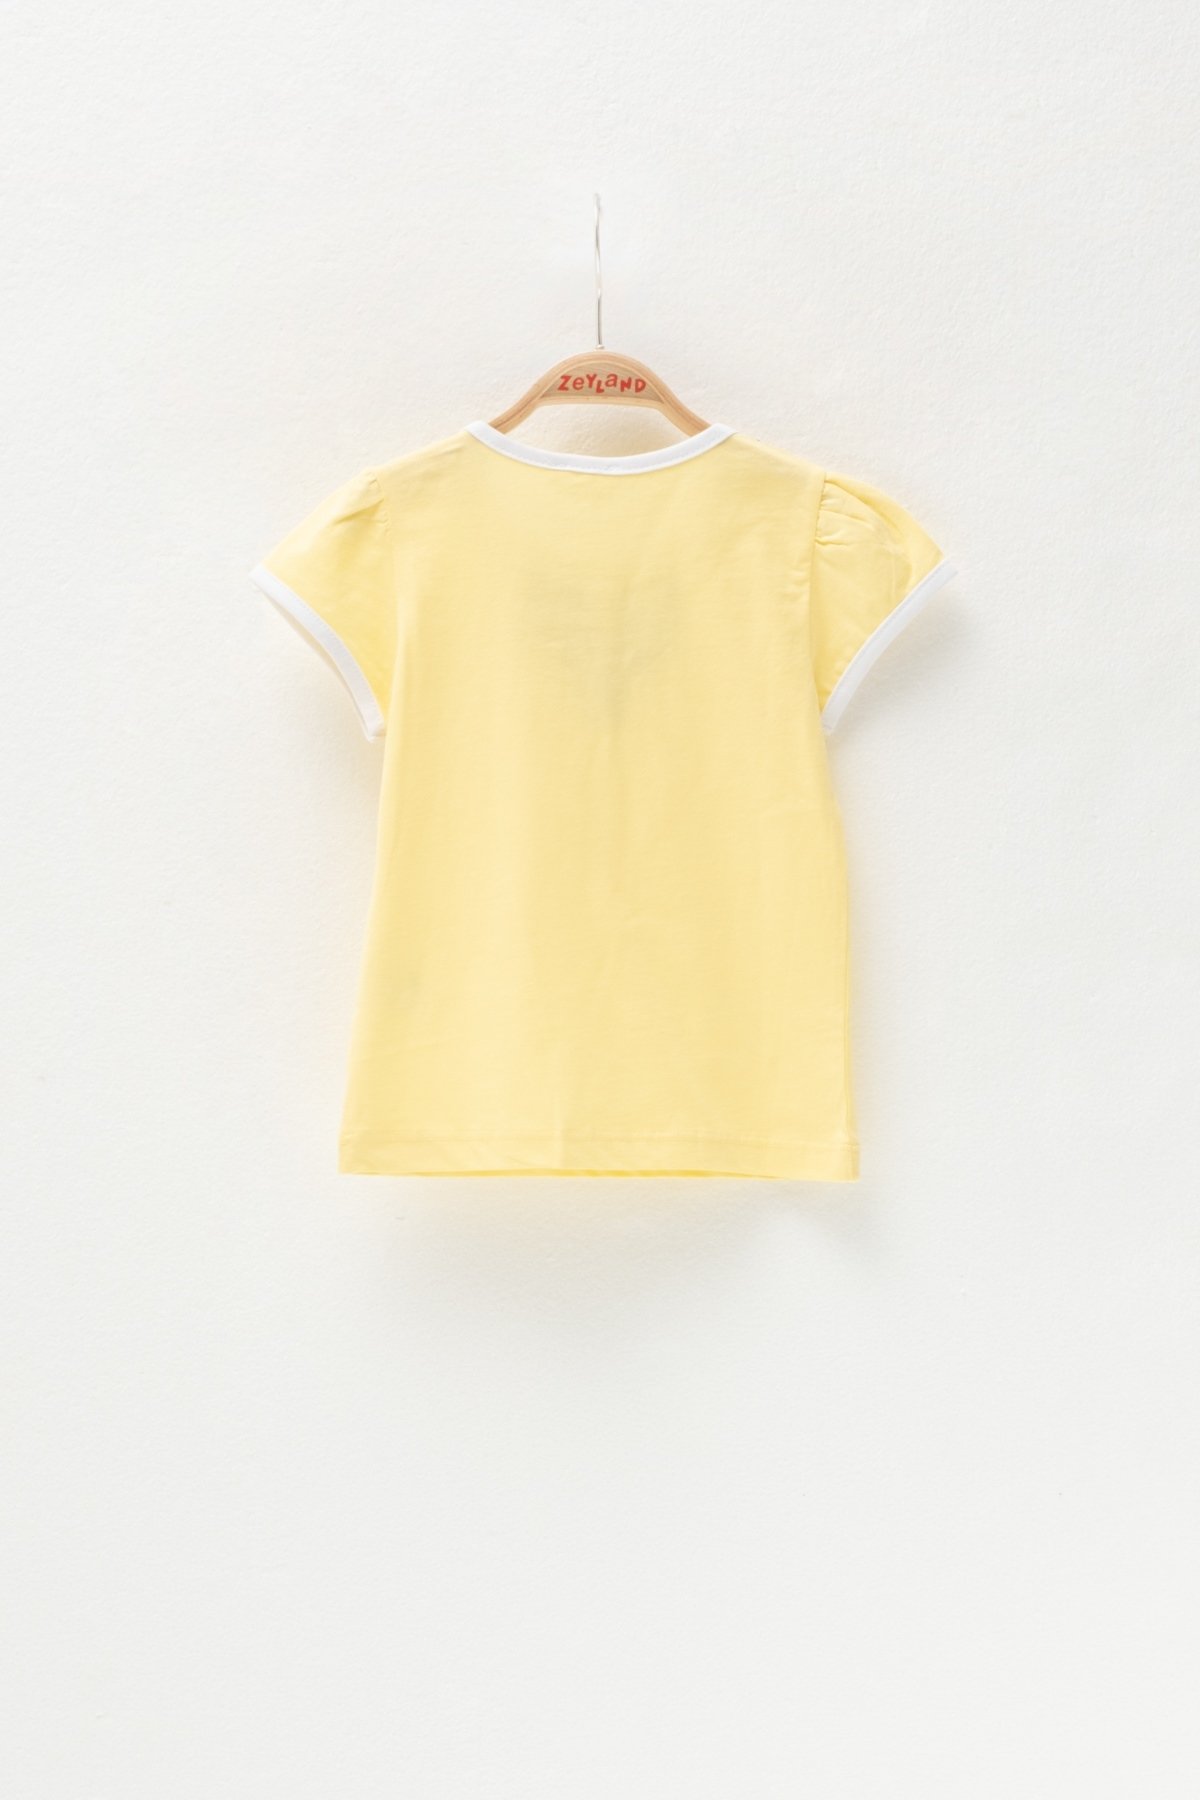 MININIO Kız Bebek Sarı Çiçek Nakışlı T-Shirt (6ay-4yaş)